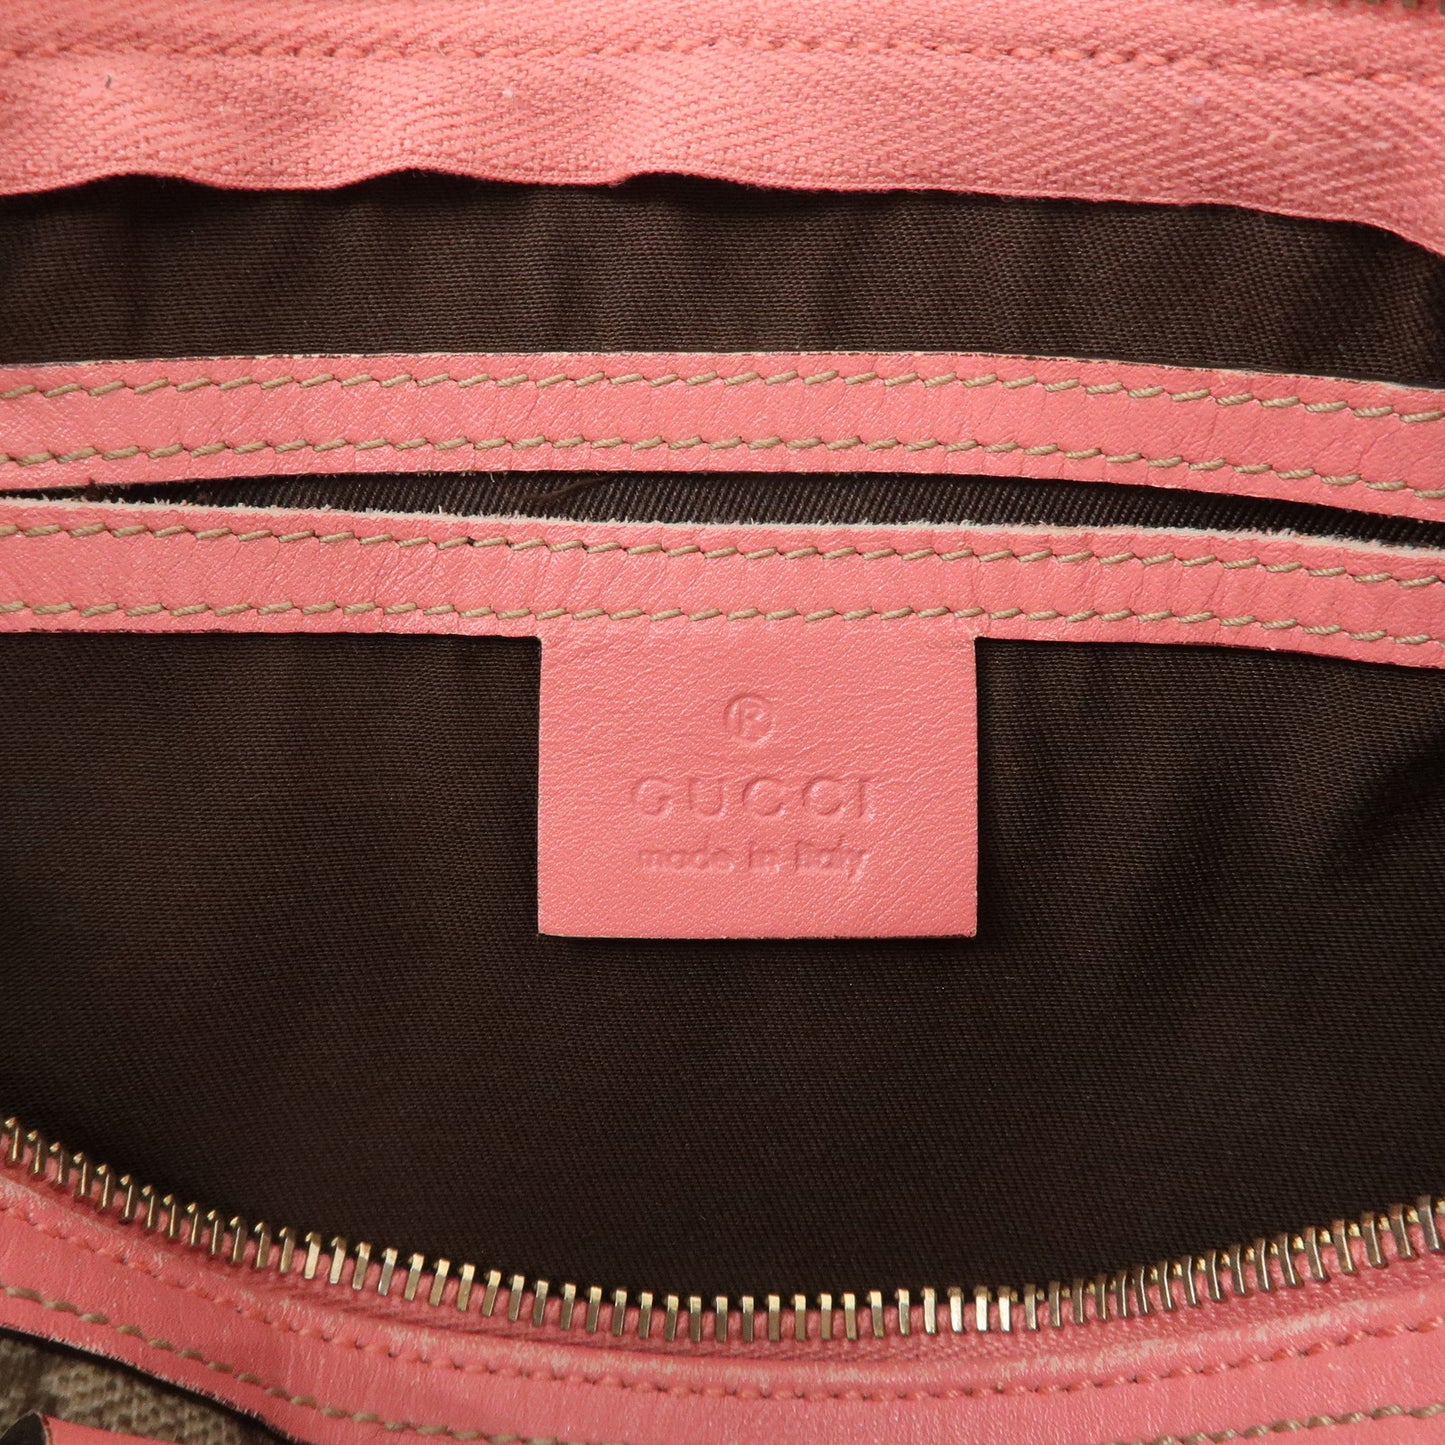 GUCCI GG Supreme Leather Boston Bag Shoulder Bag Pink 193604